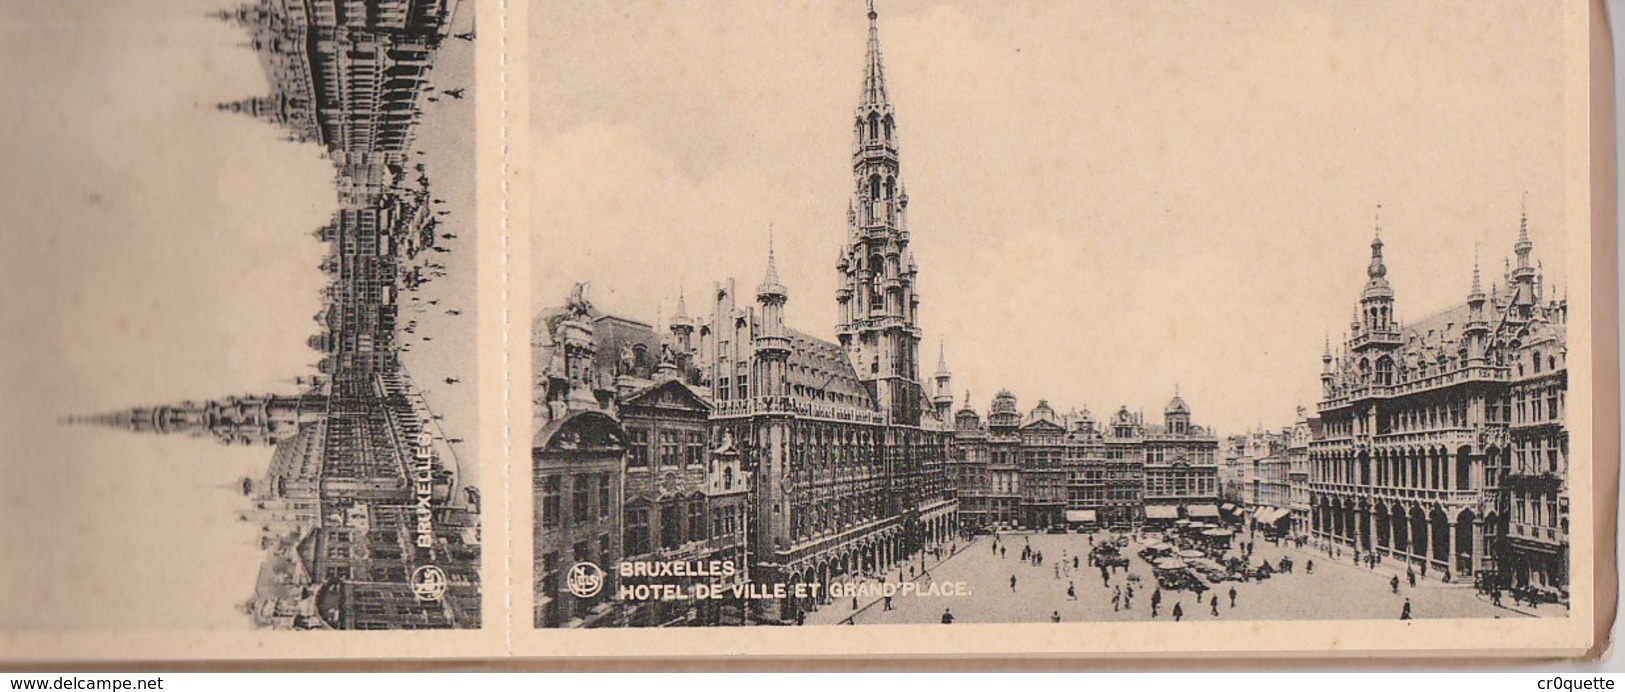 BELGIQUE BRUXELLES BRUSSELS - LOT DE 12 VIEILLES CARTES POSTALES  Vers 1920 - Sets And Collections